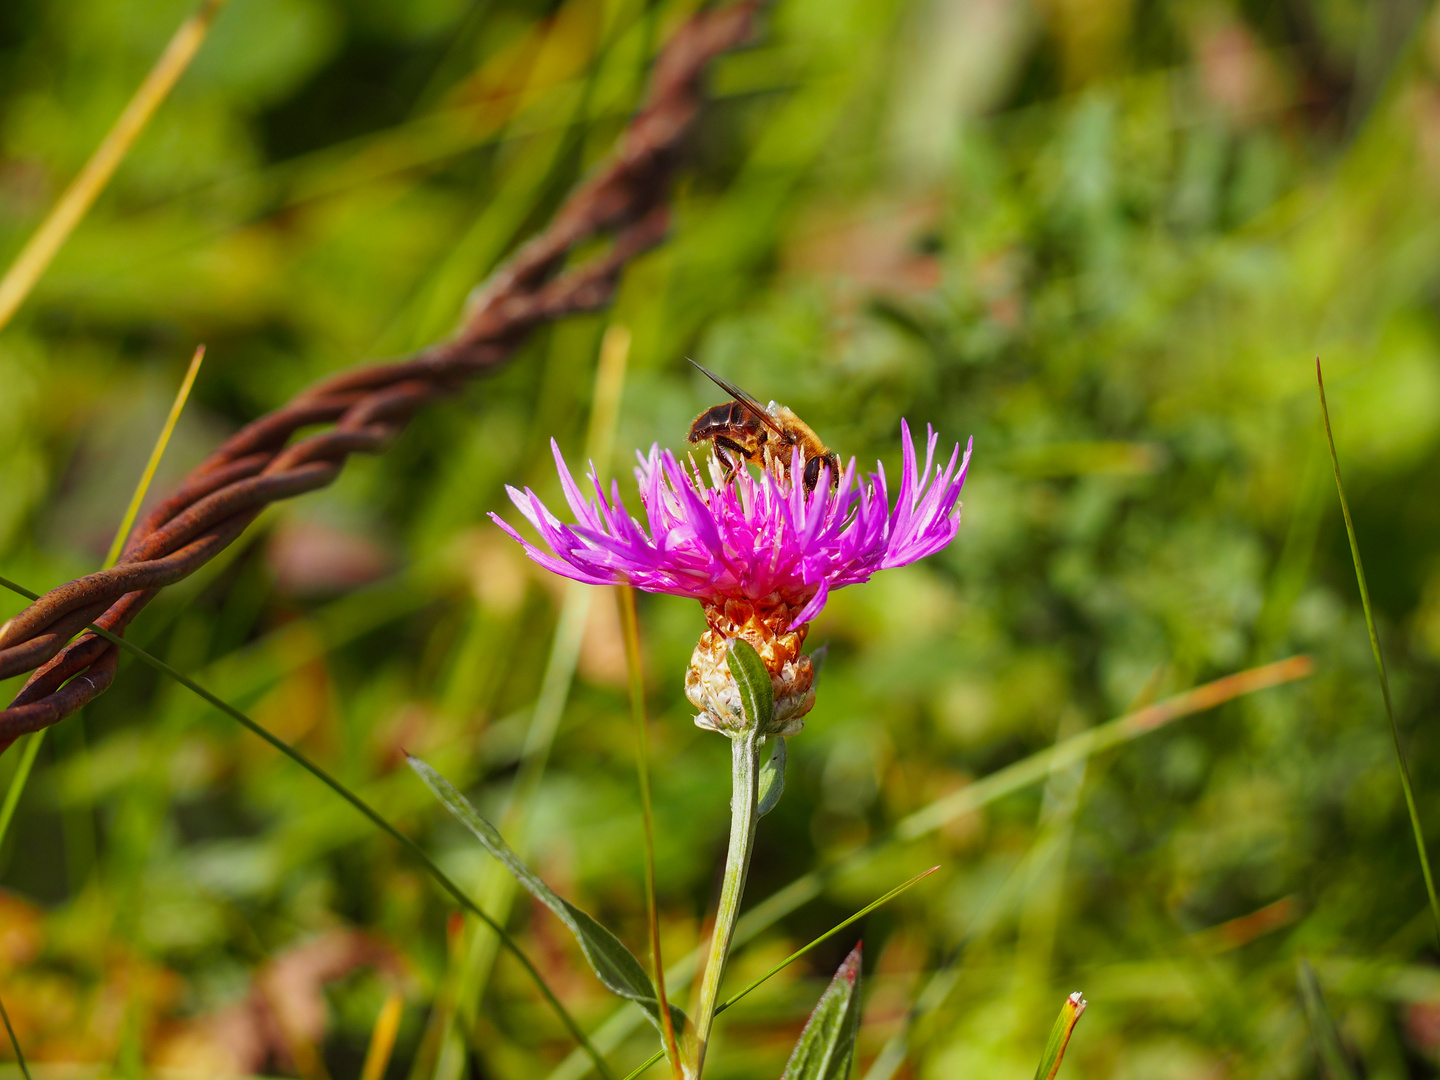 Insekt gelandet auf einer Flockenblume